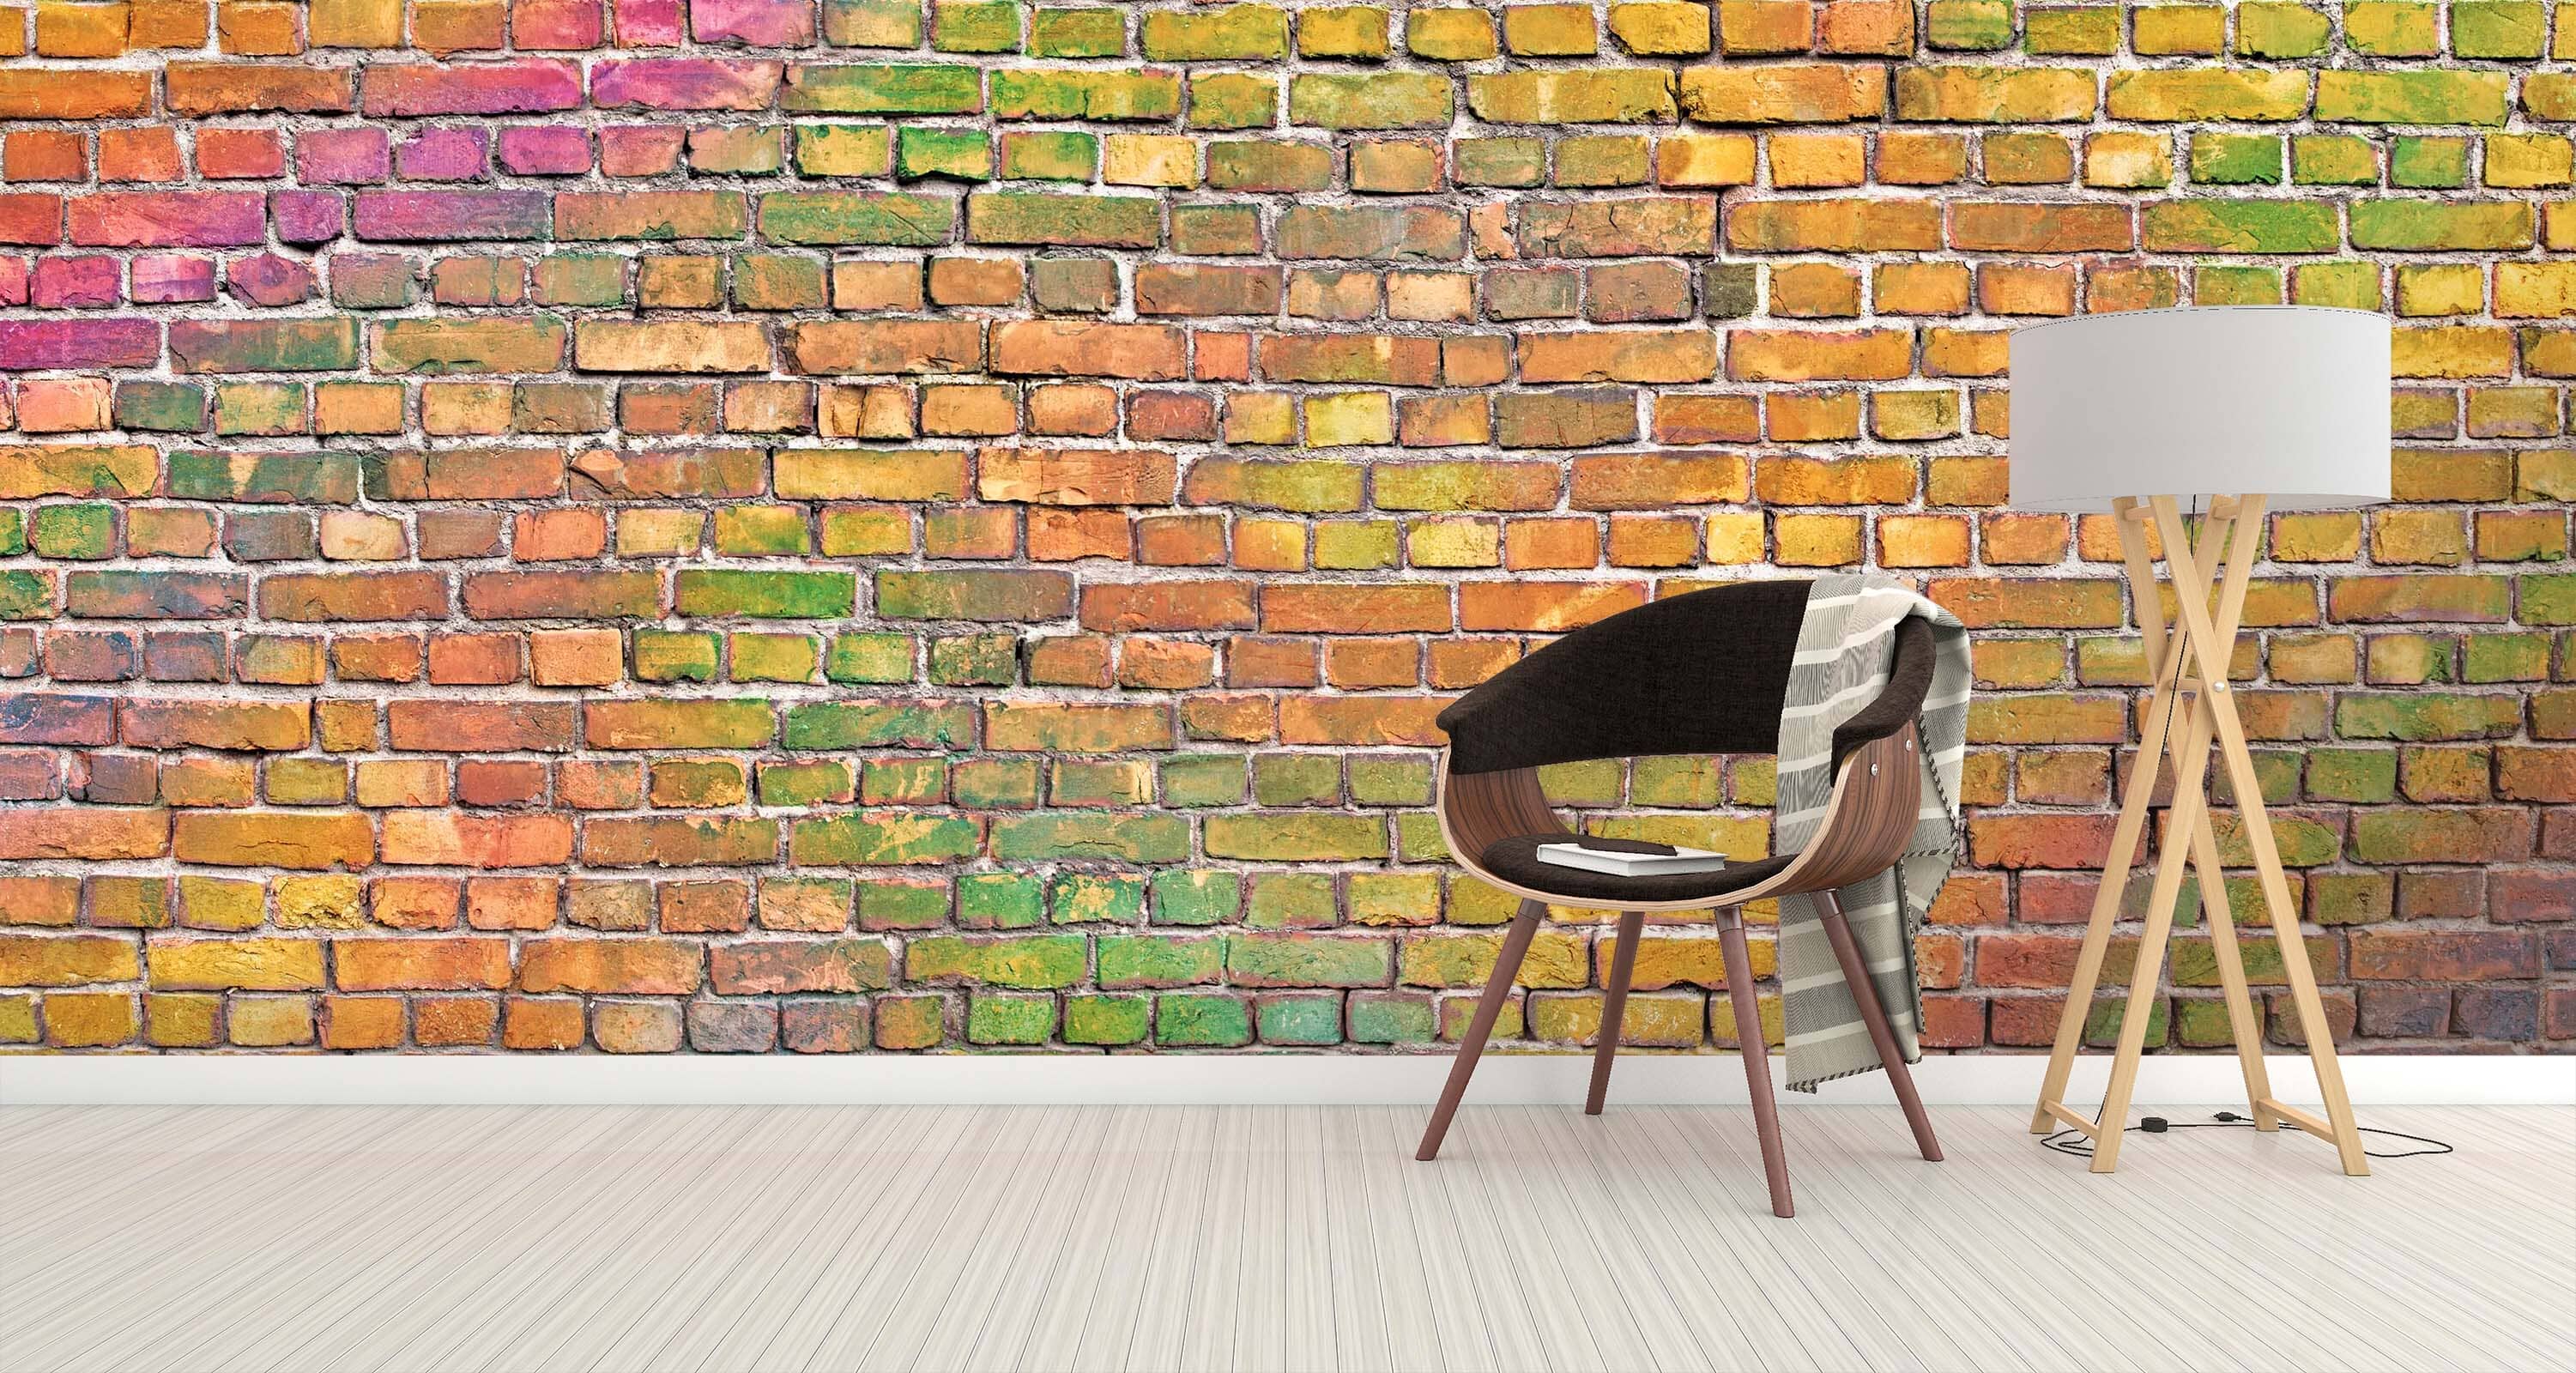 3D Colored Brick Wall 108 Wall Murals Wallpaper AJ Wallpaper 2 